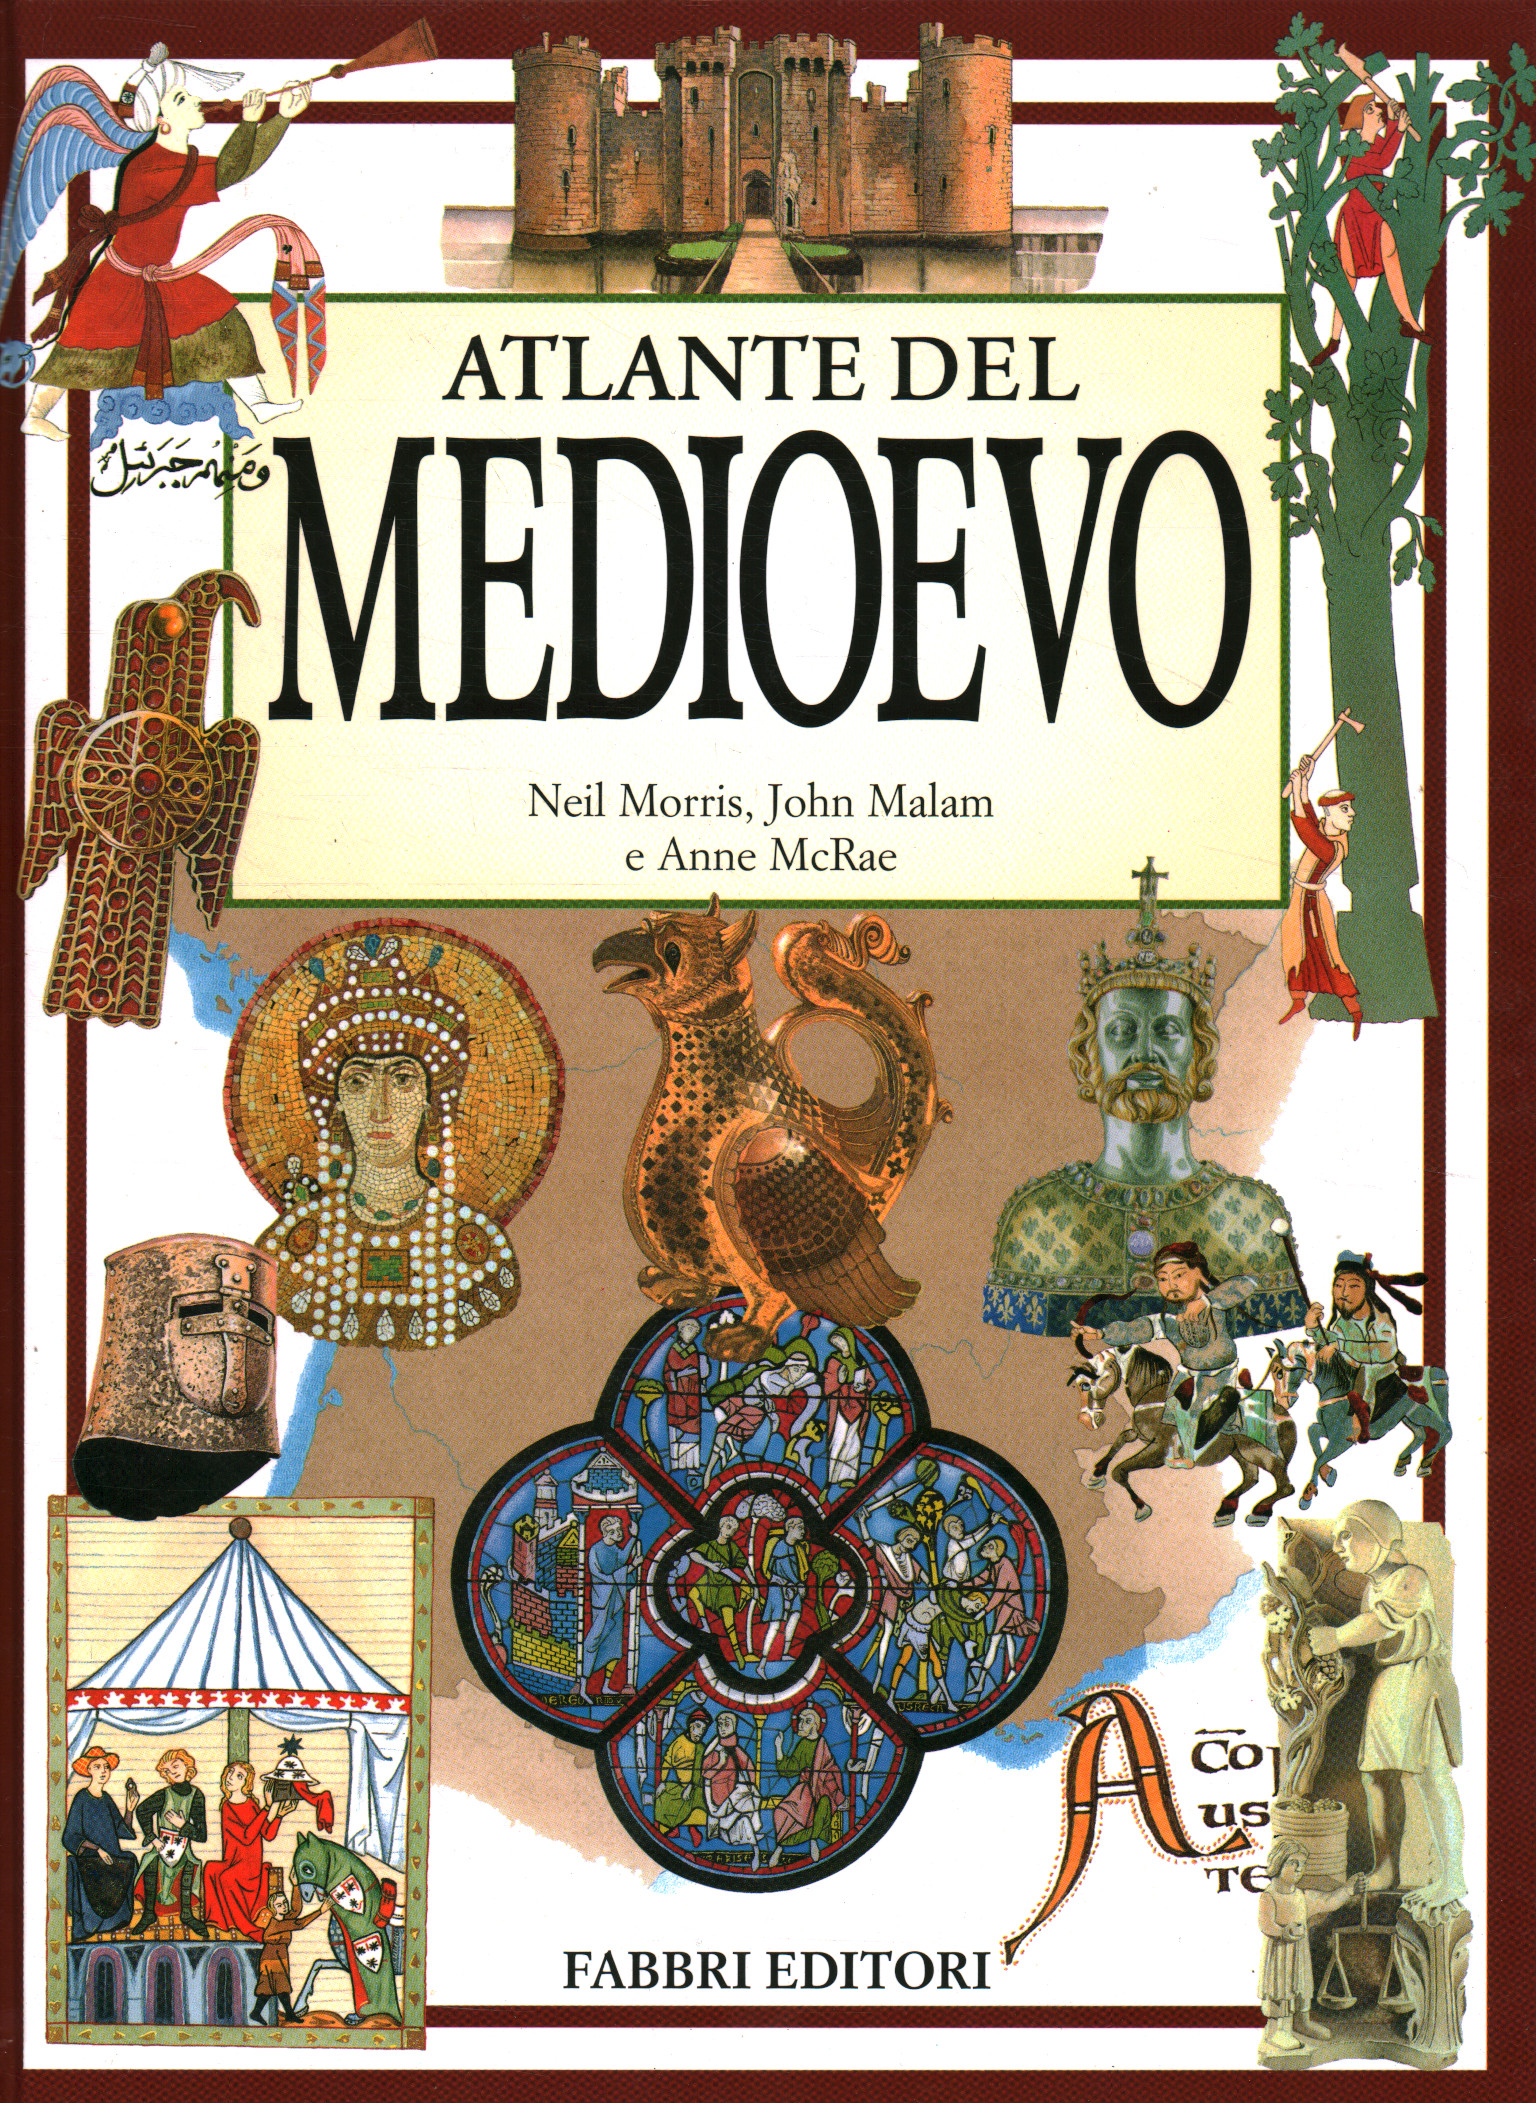 Atlas des Mittelalters